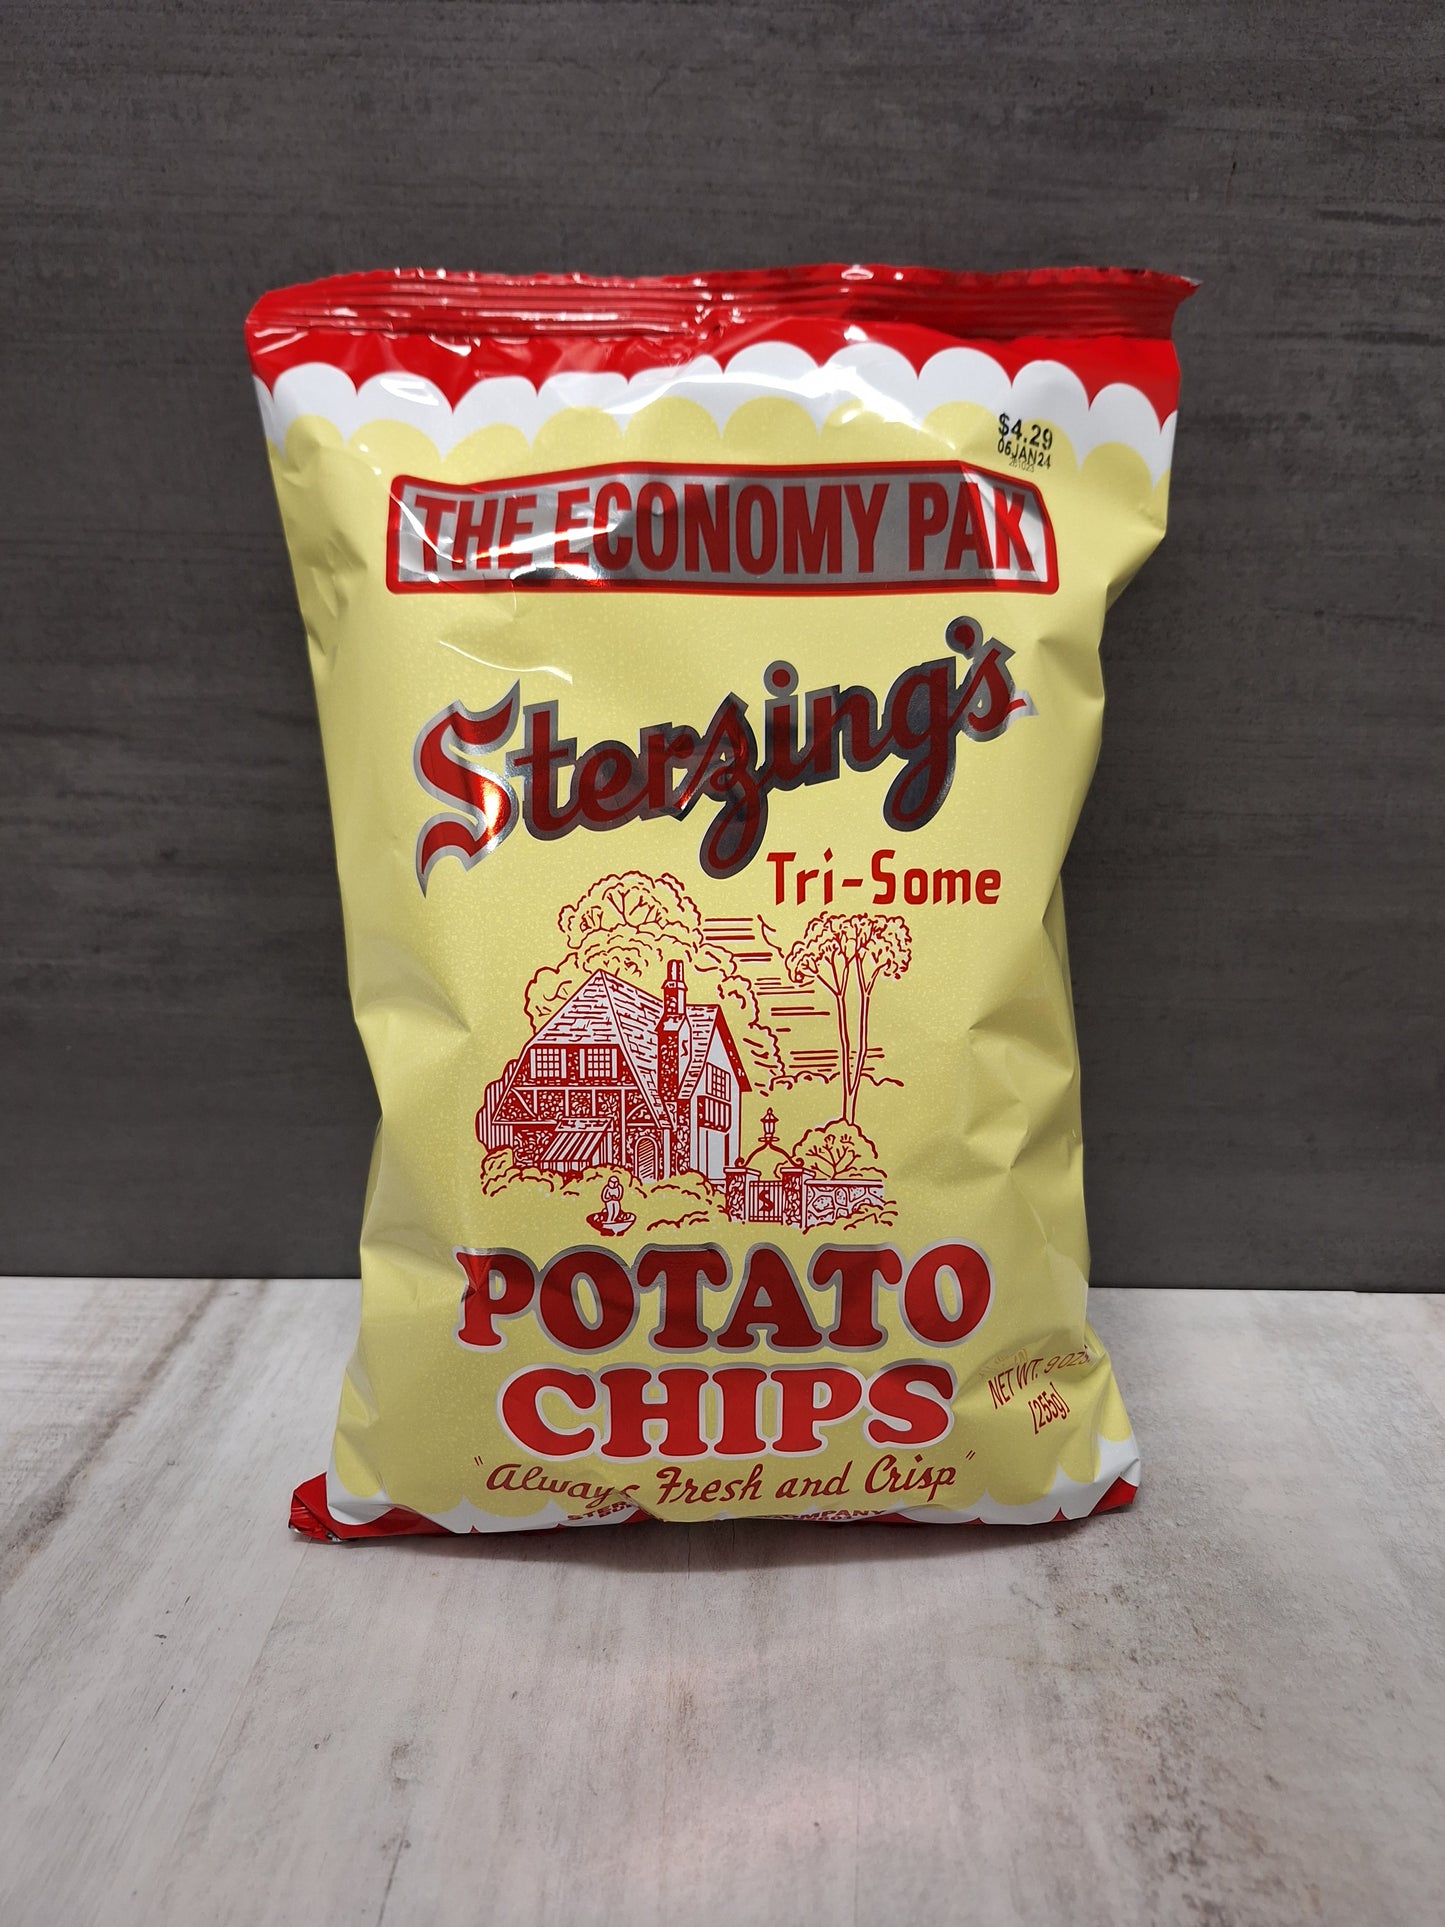 Sterzing’s Potato Chips